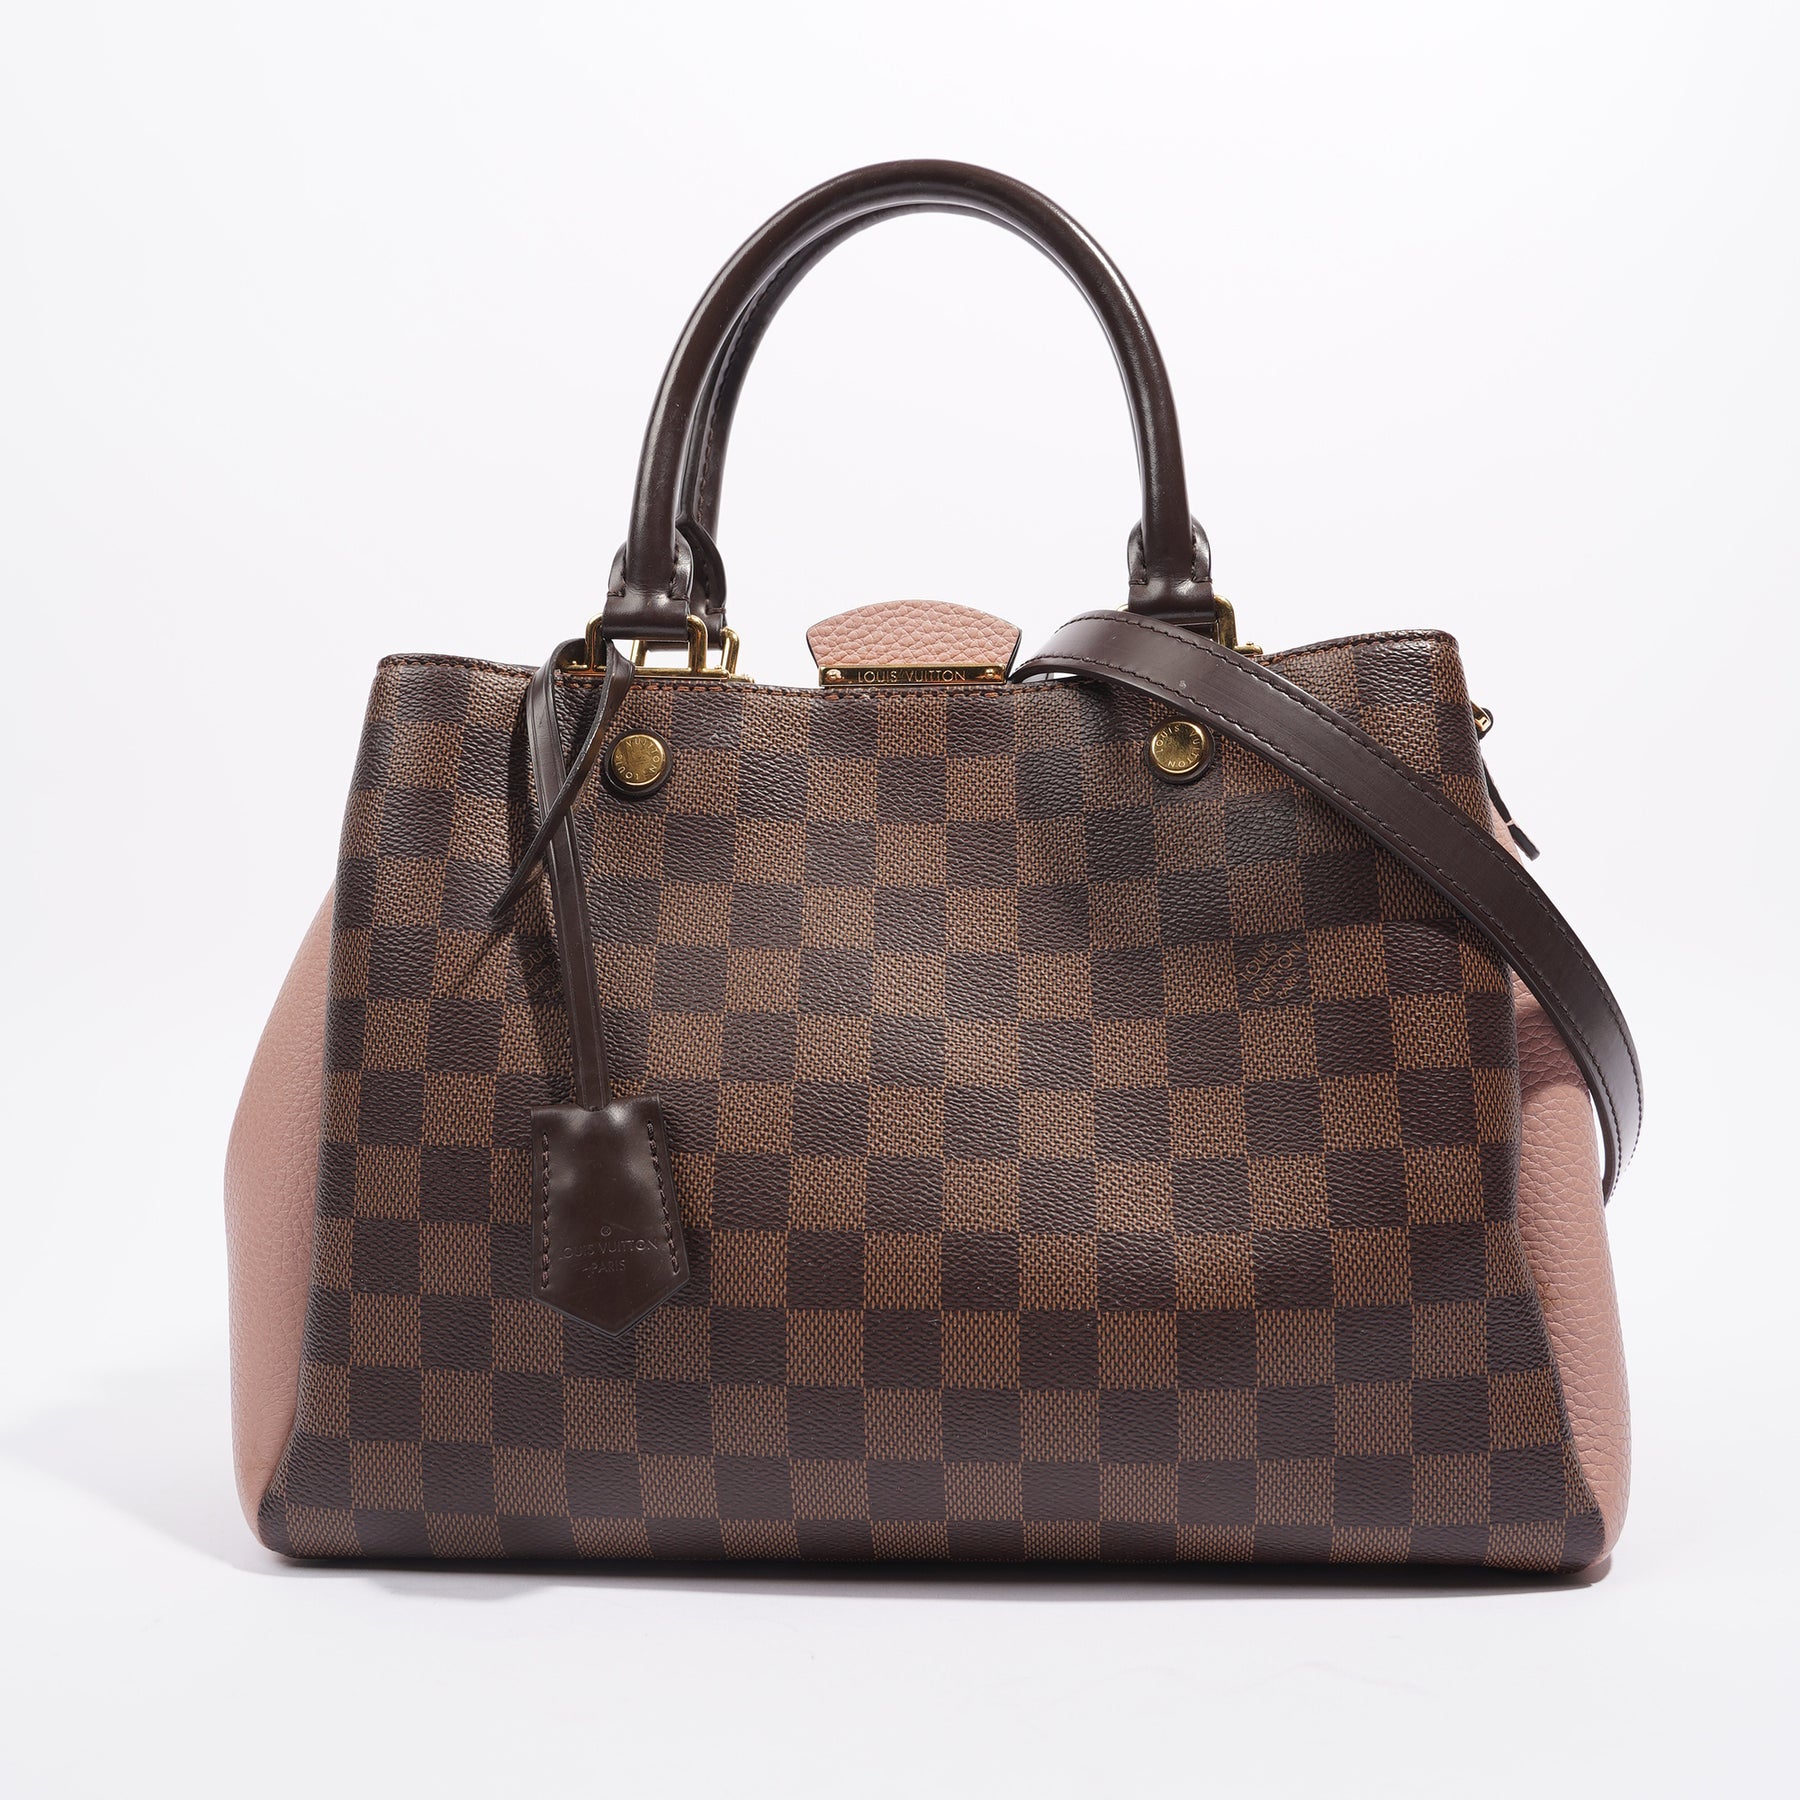 Louis Vuitton Brittany Damier Leather Satchel Bag